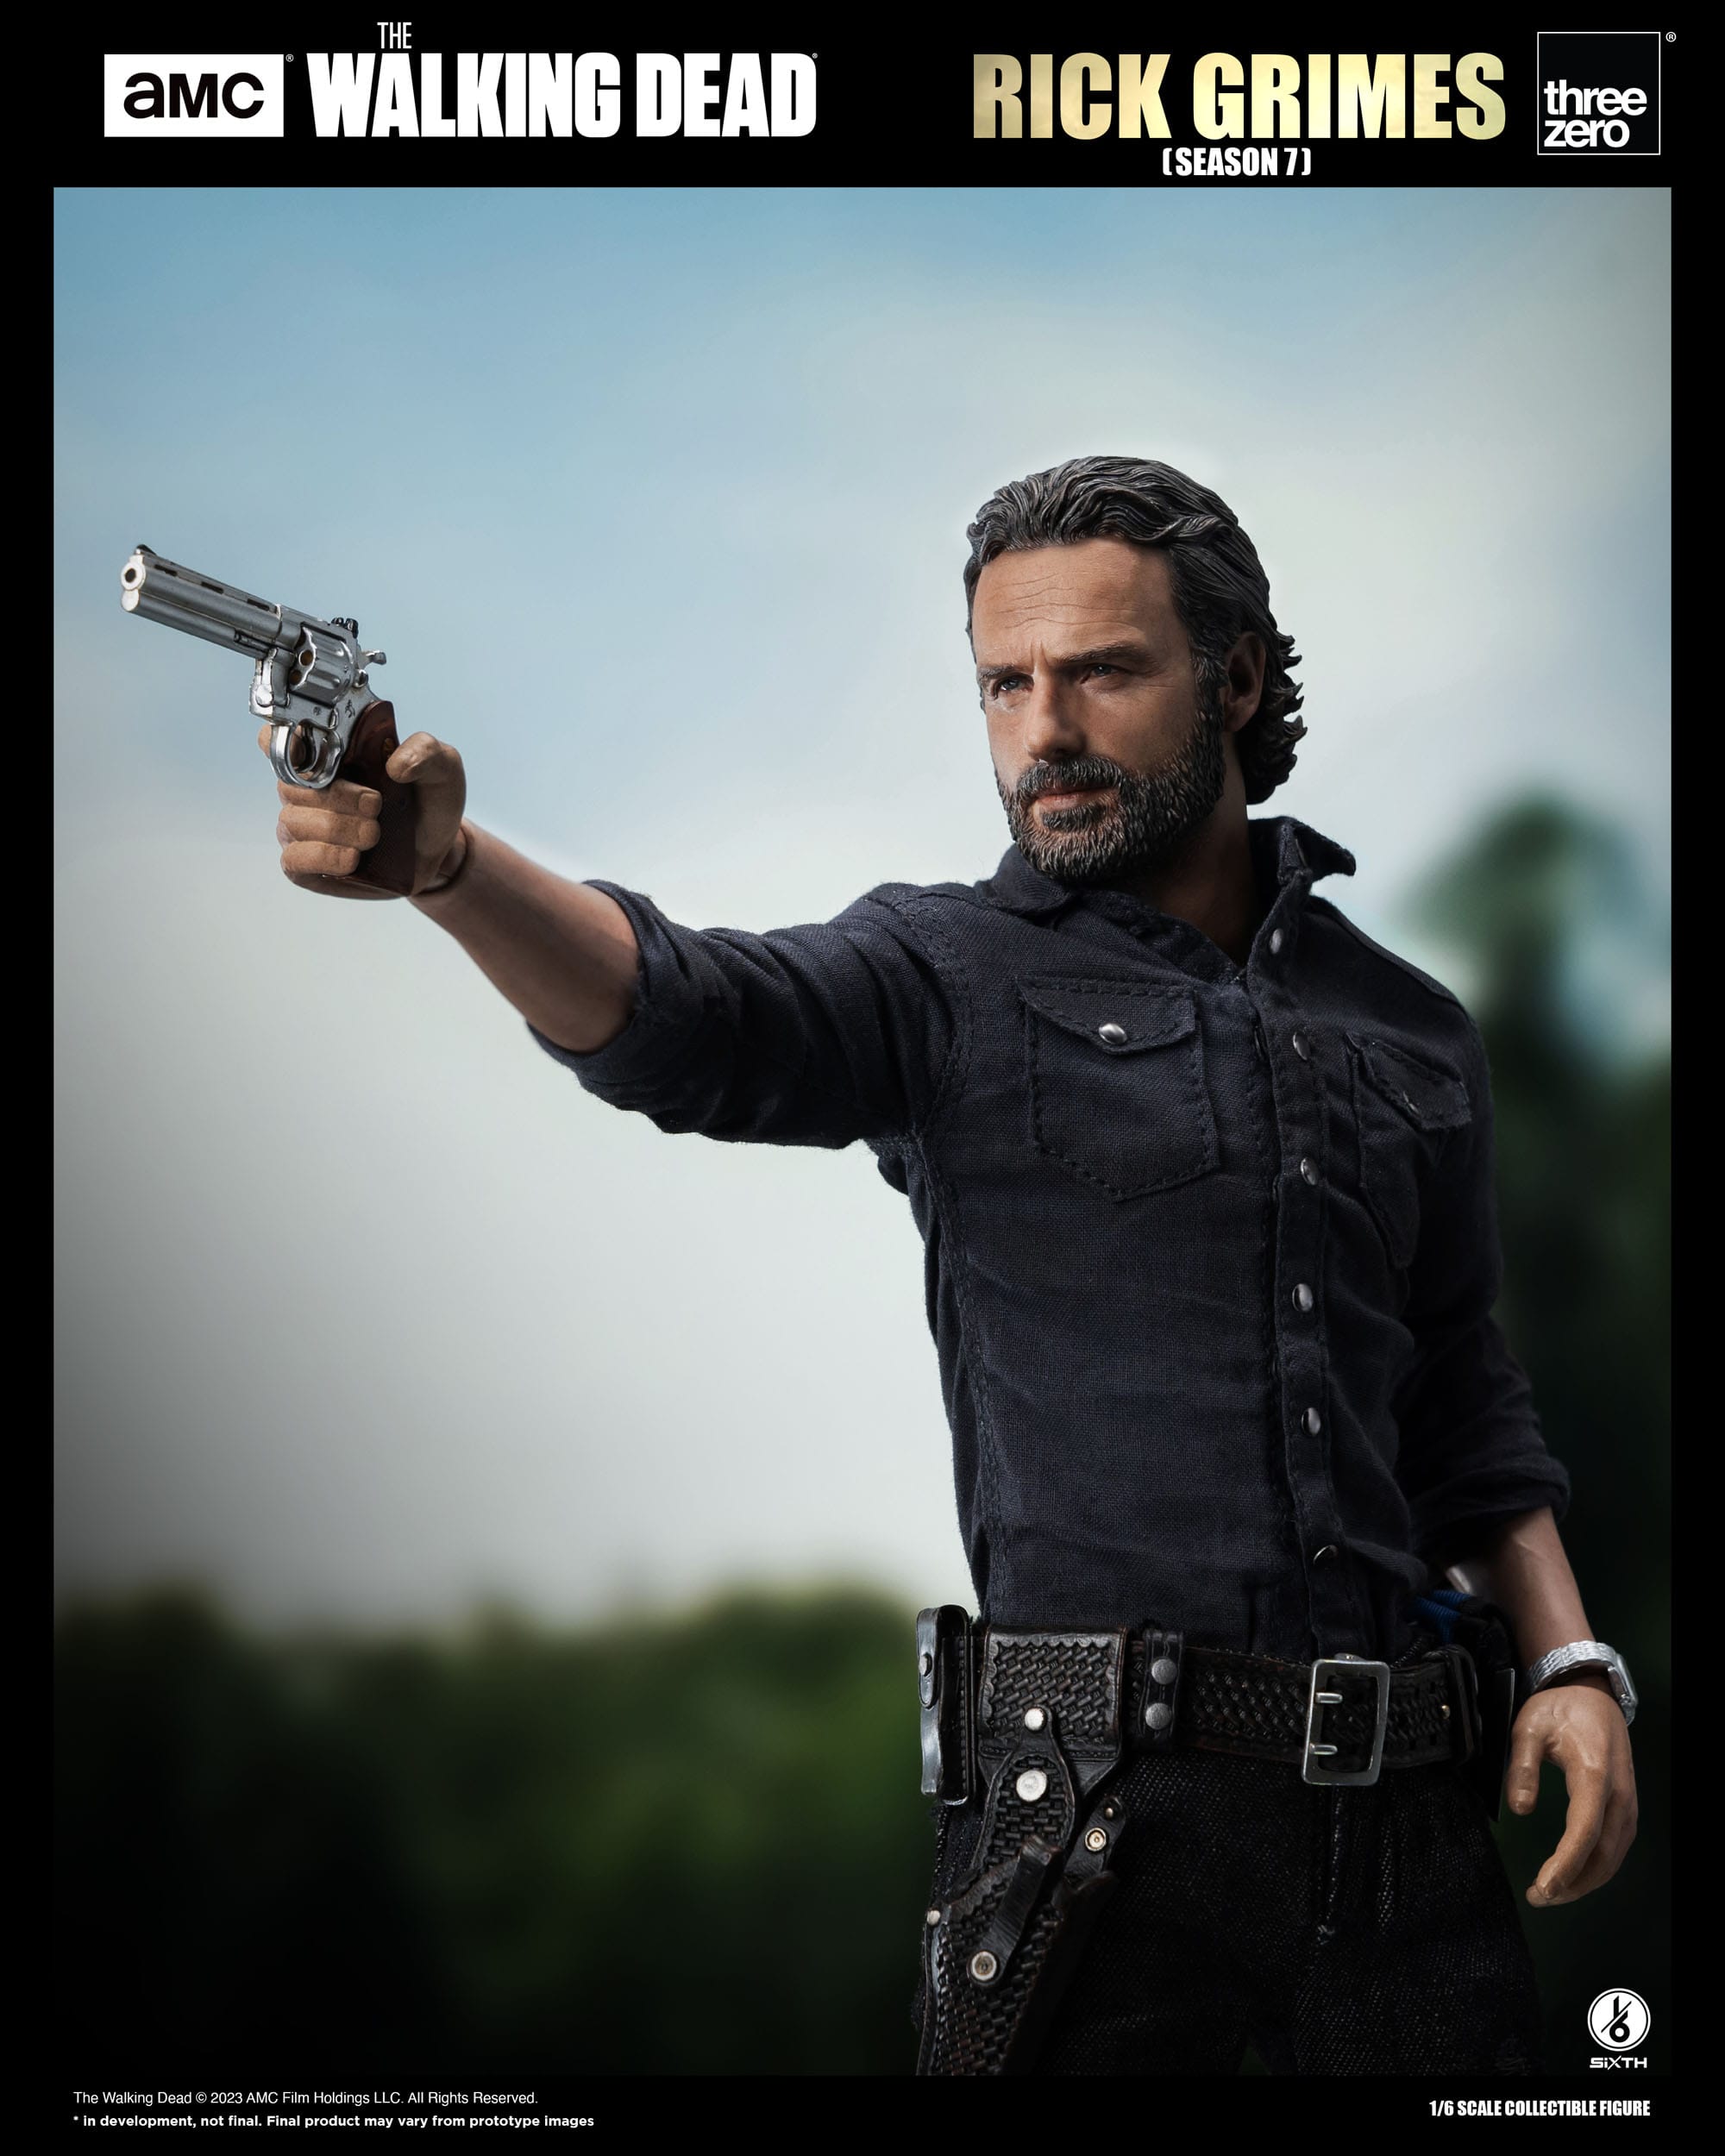 The Walking Dead Action Figure 1/6 Rick Grimes 30 cm